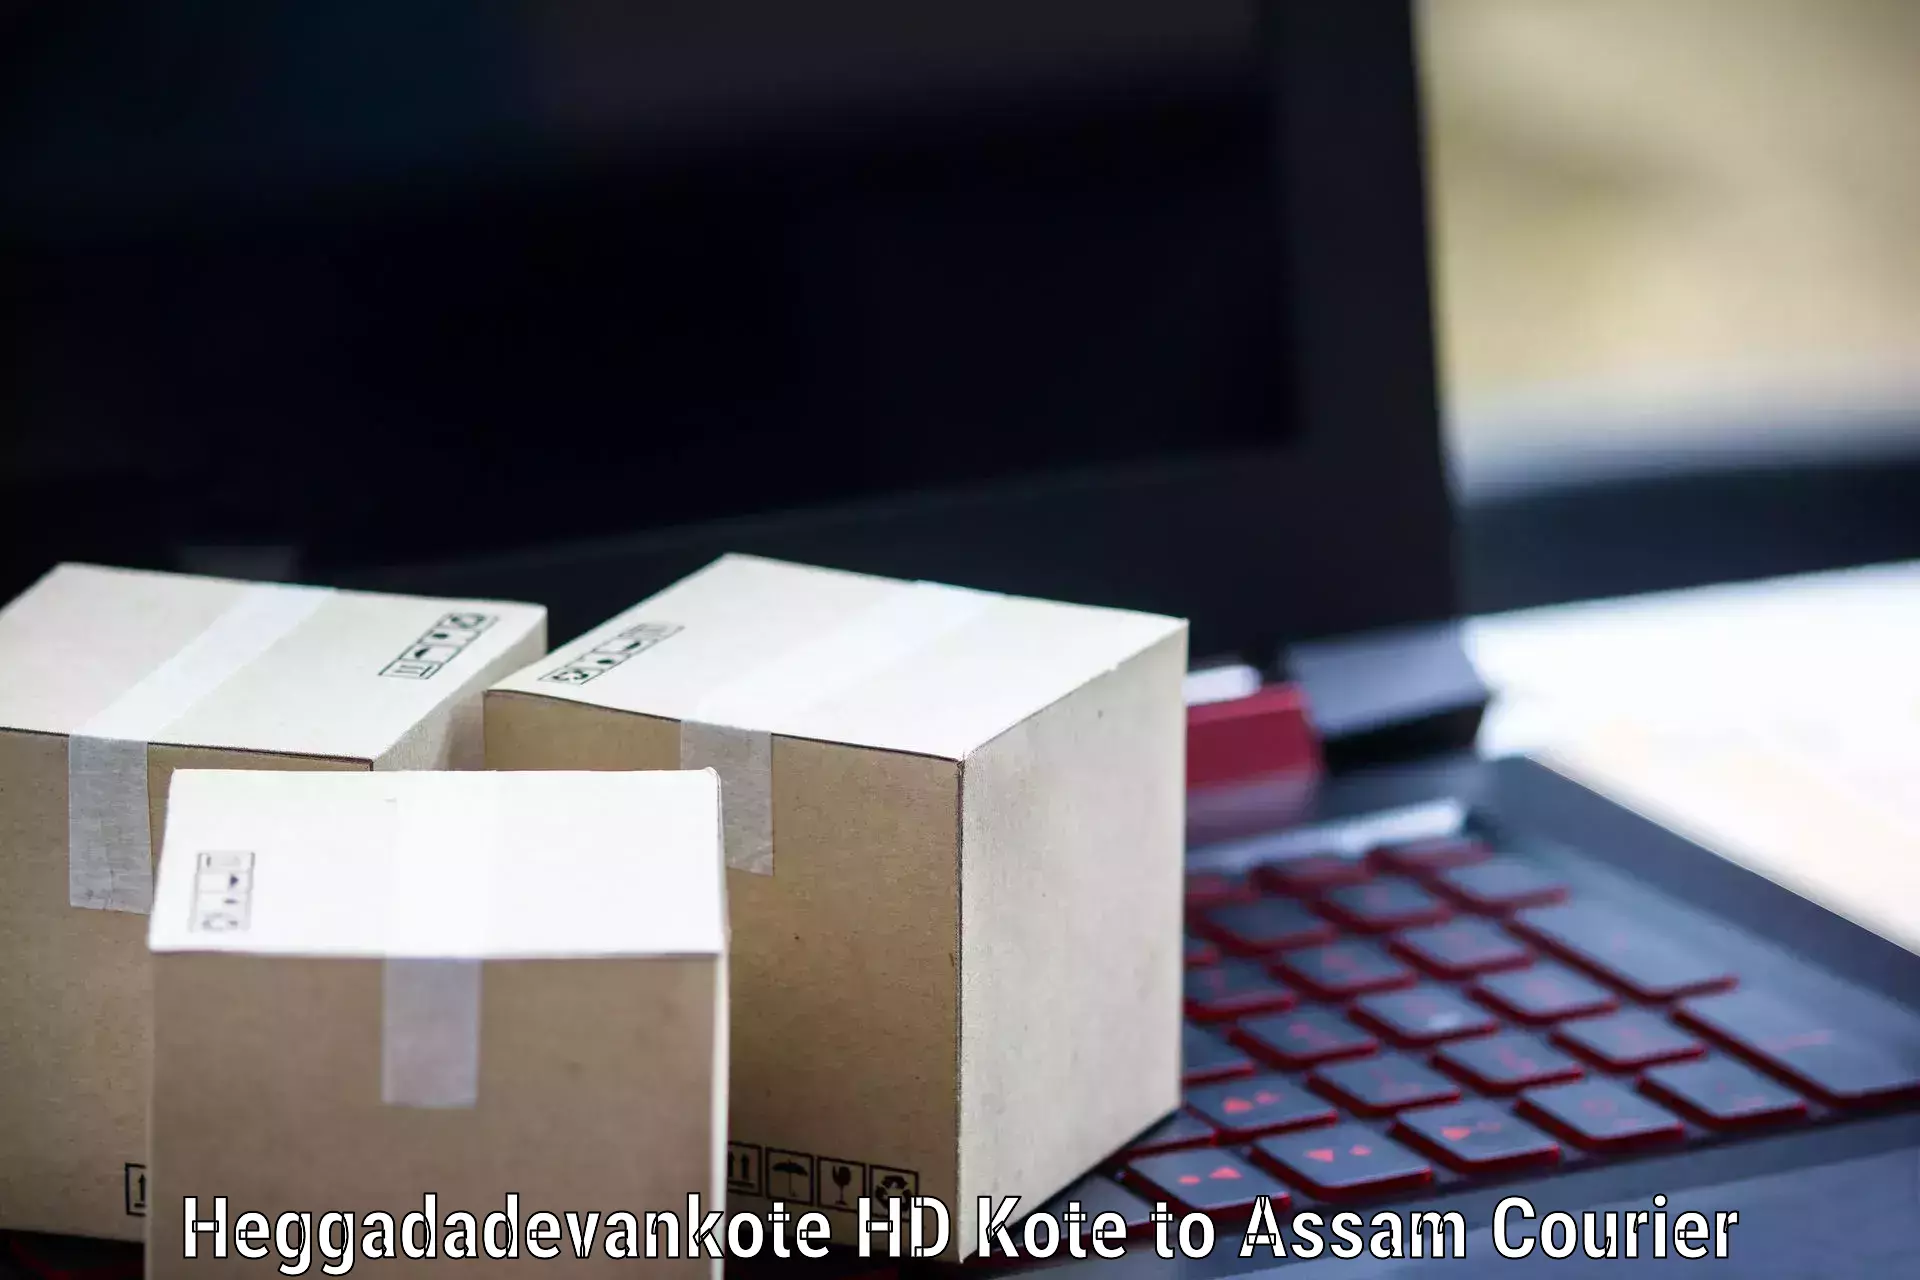 Modern courier technology Heggadadevankote HD Kote to Bokolia